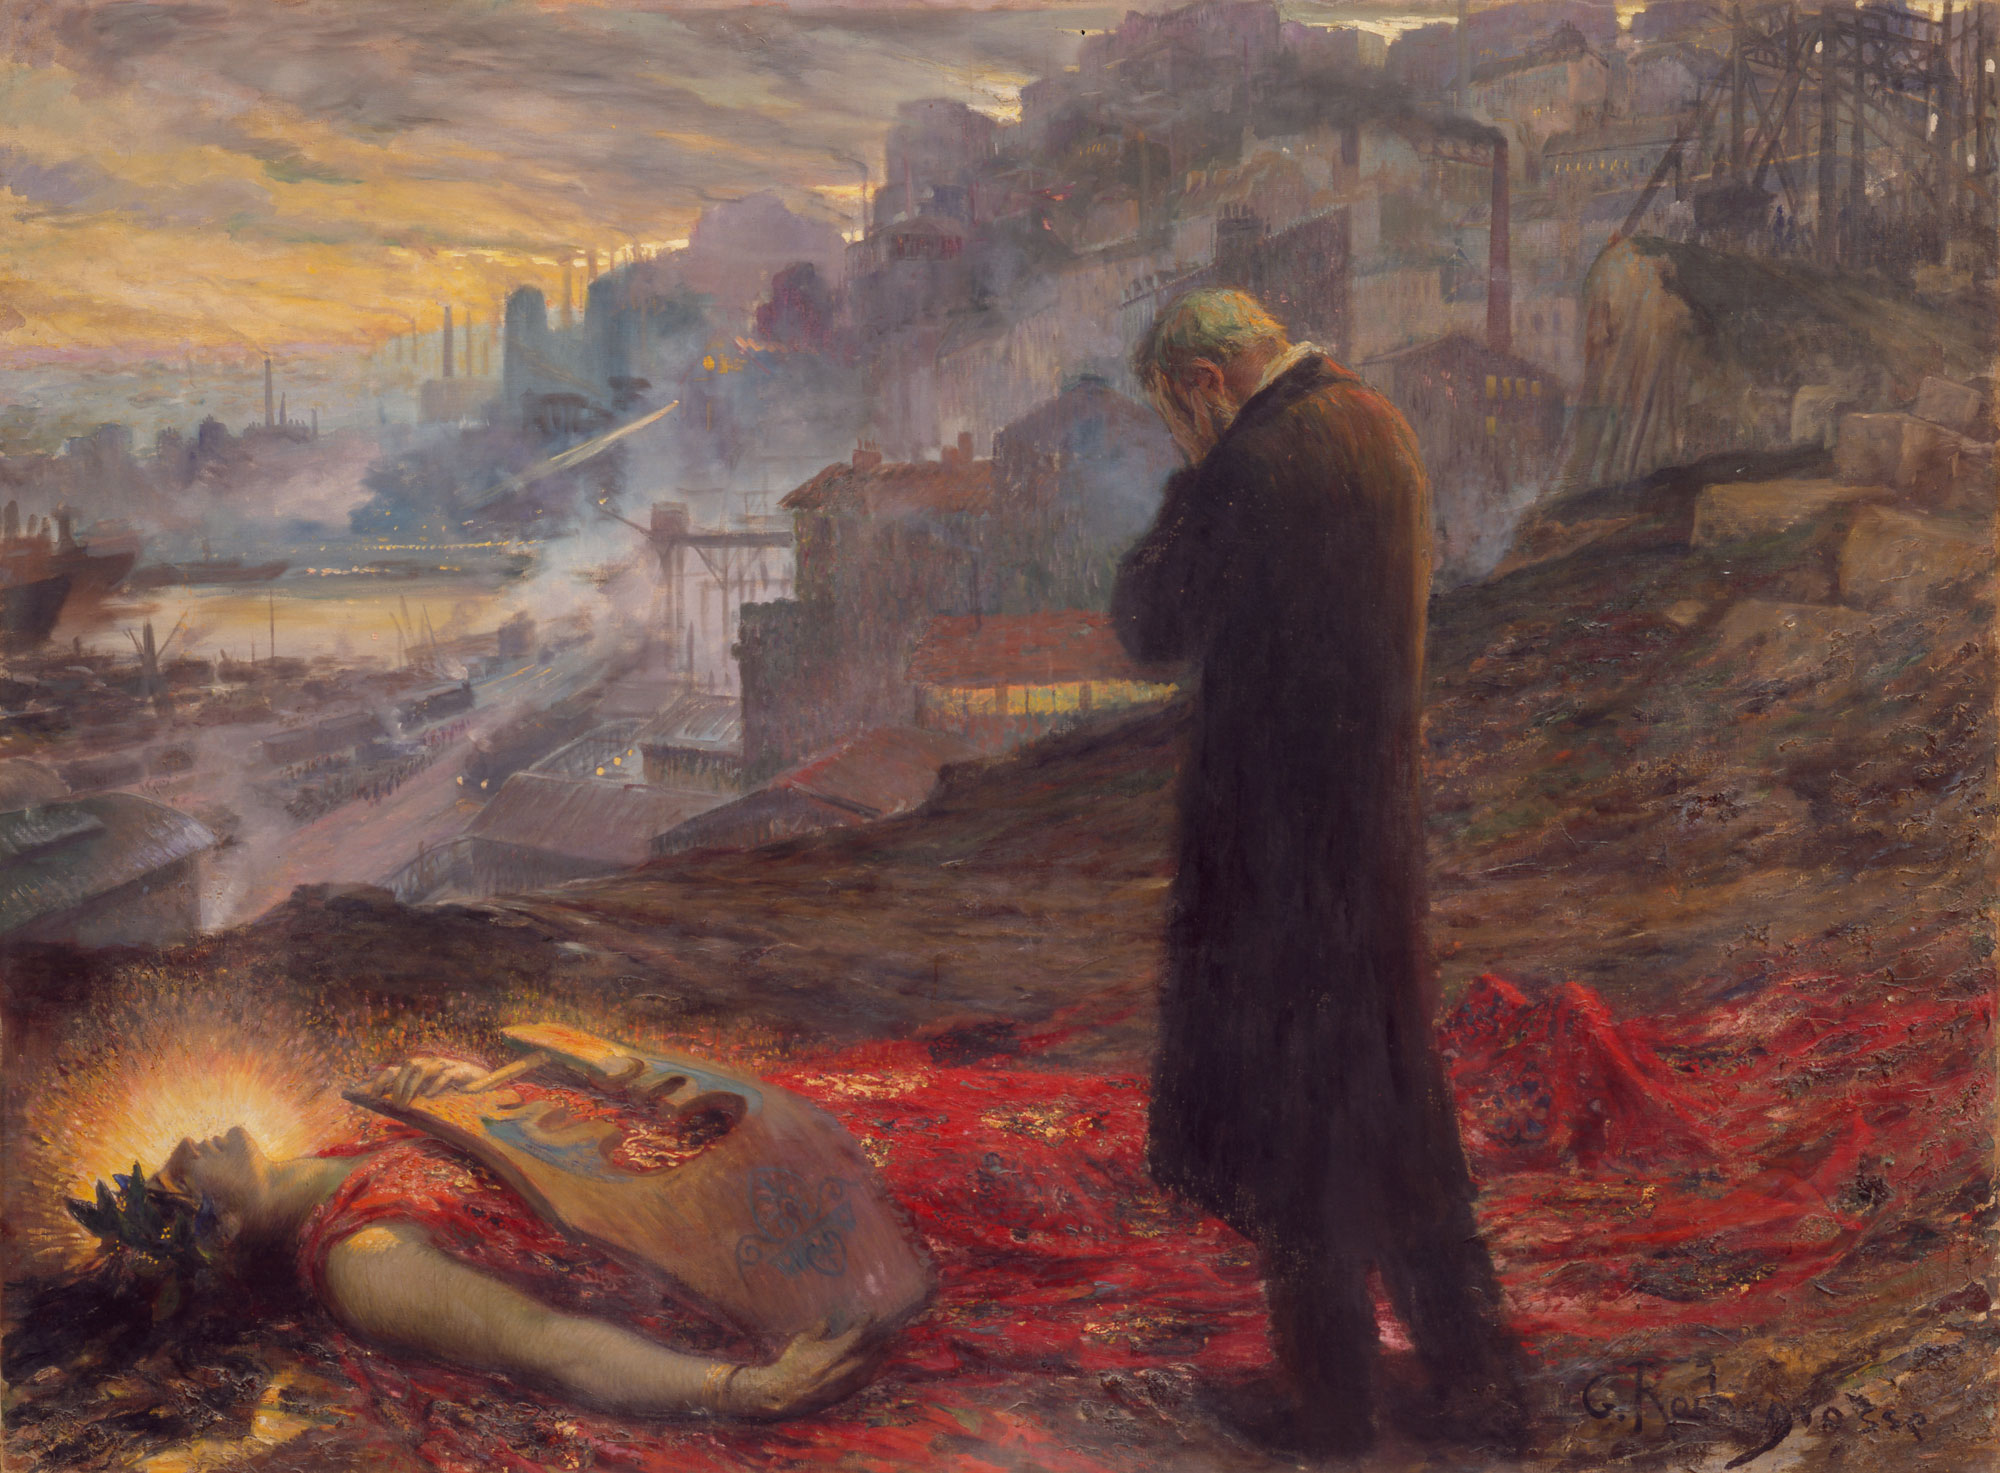 Georges-Antoine Rochegrosse, La mort de la pourpre [La morte della porpora] (1914 circa; olio su tela, 219 x 298 cm; Musée d’arts de Nantes, inv. 203)
